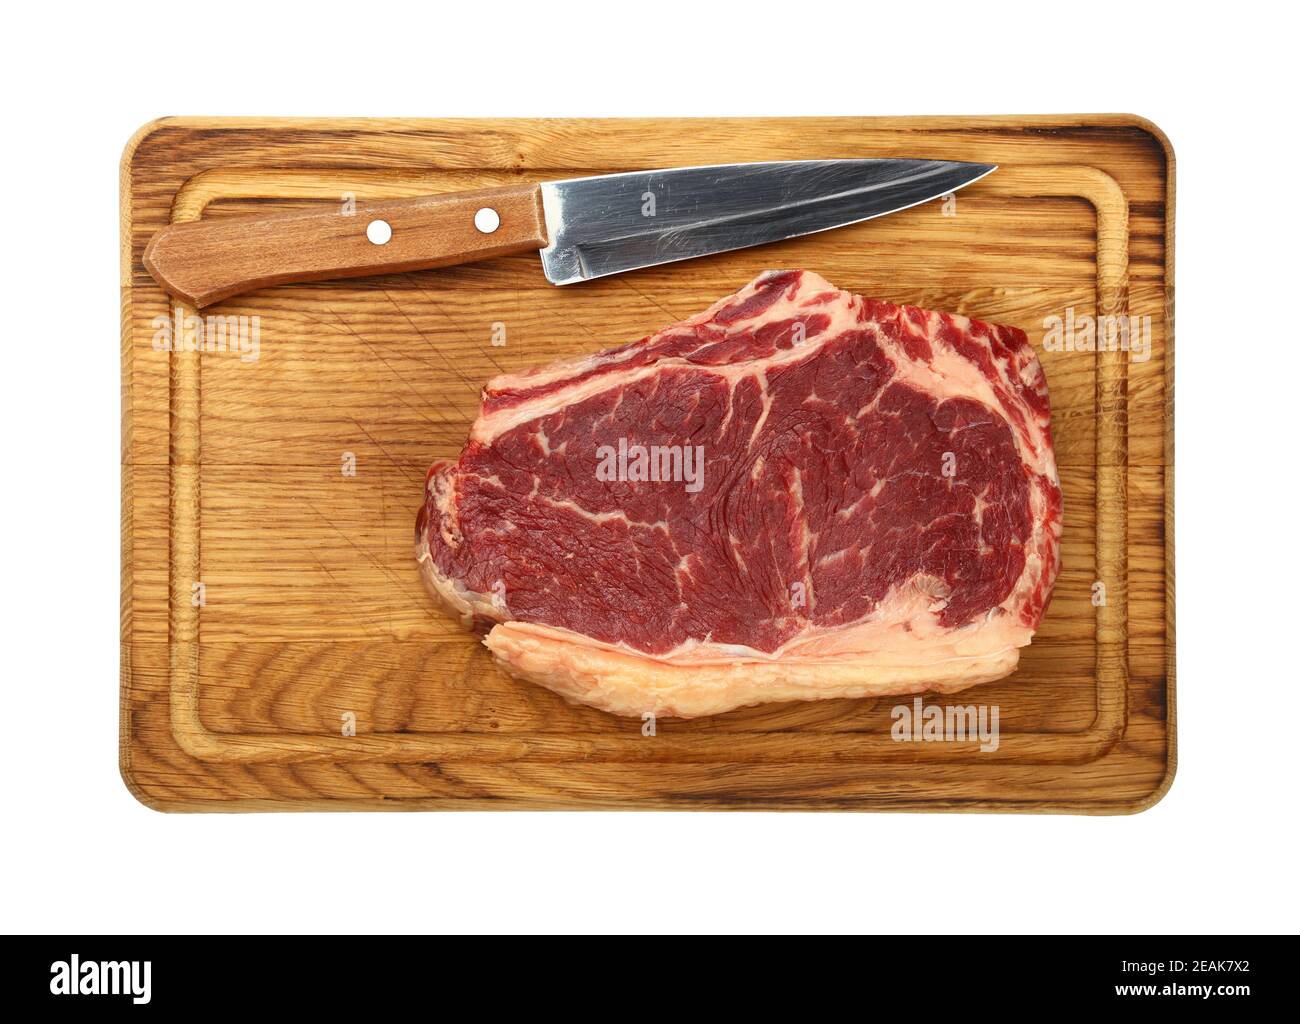 Gros plan sur un steak de bœuf cru à la ribeye sur une planche de bois Banque D'Images